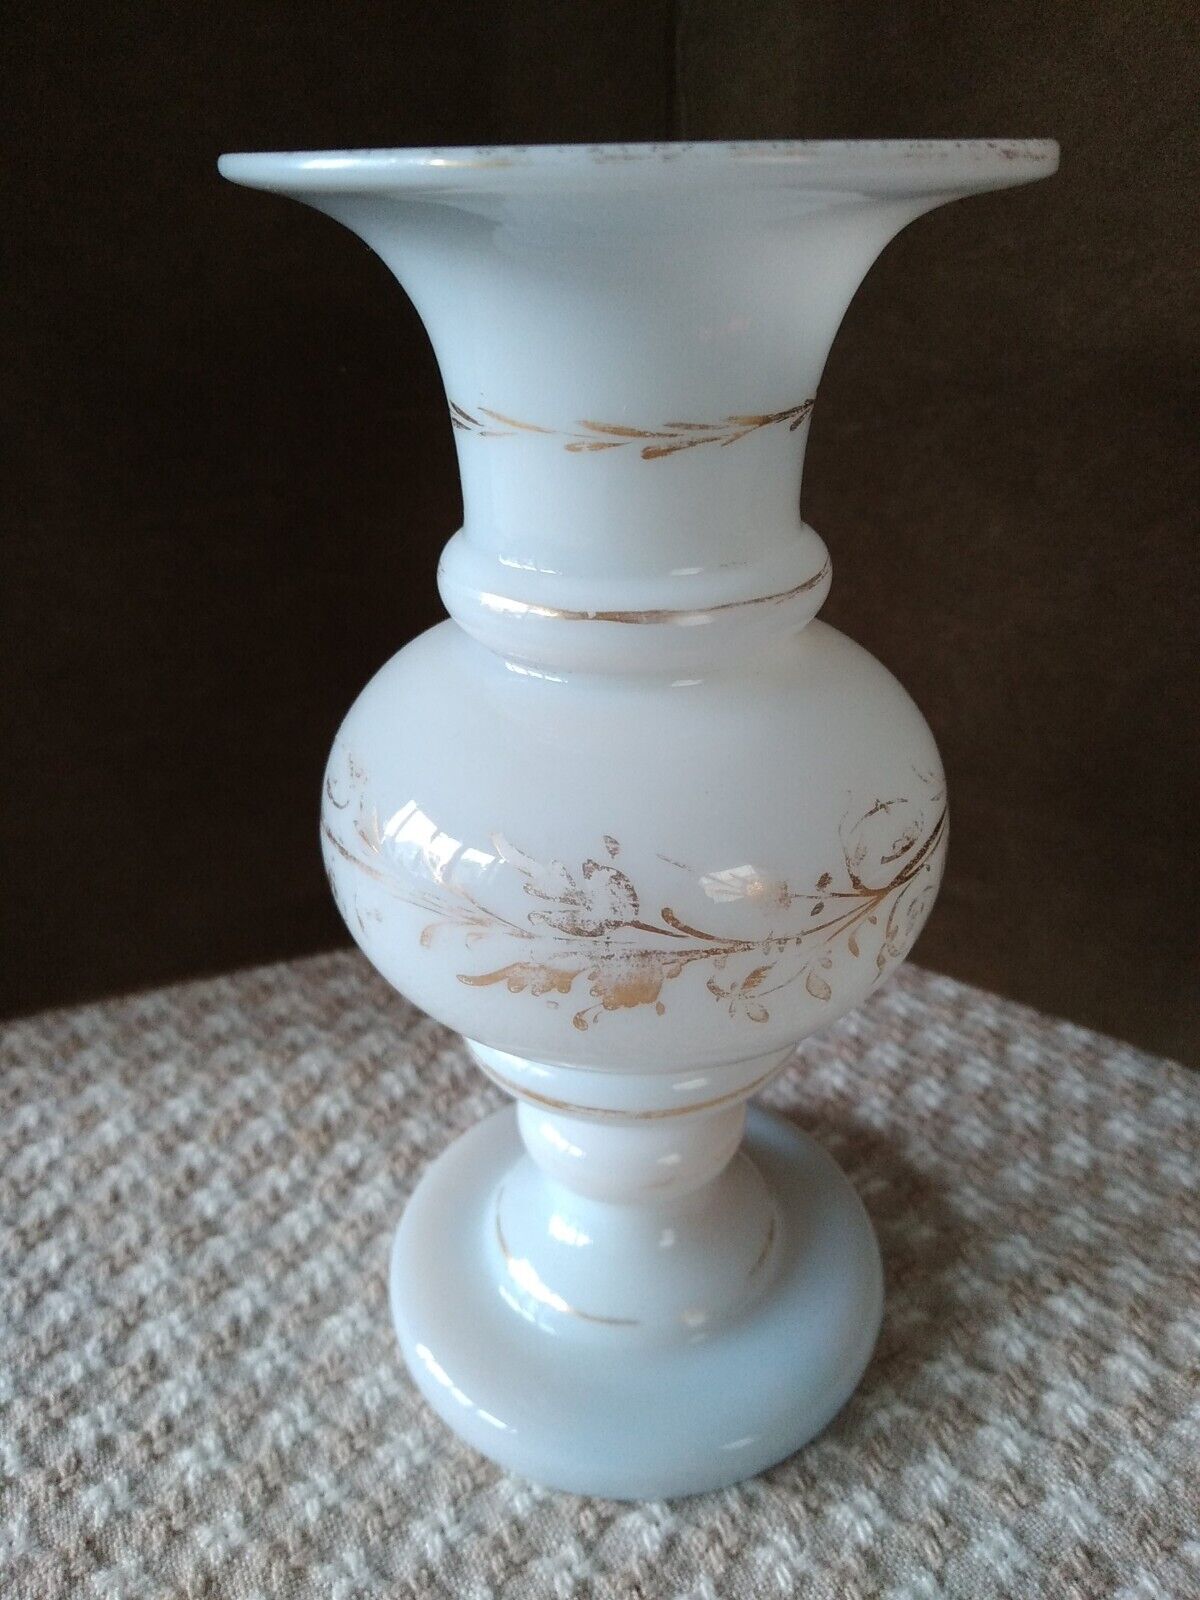 Antique Handblown Glass Vase...Bristol??